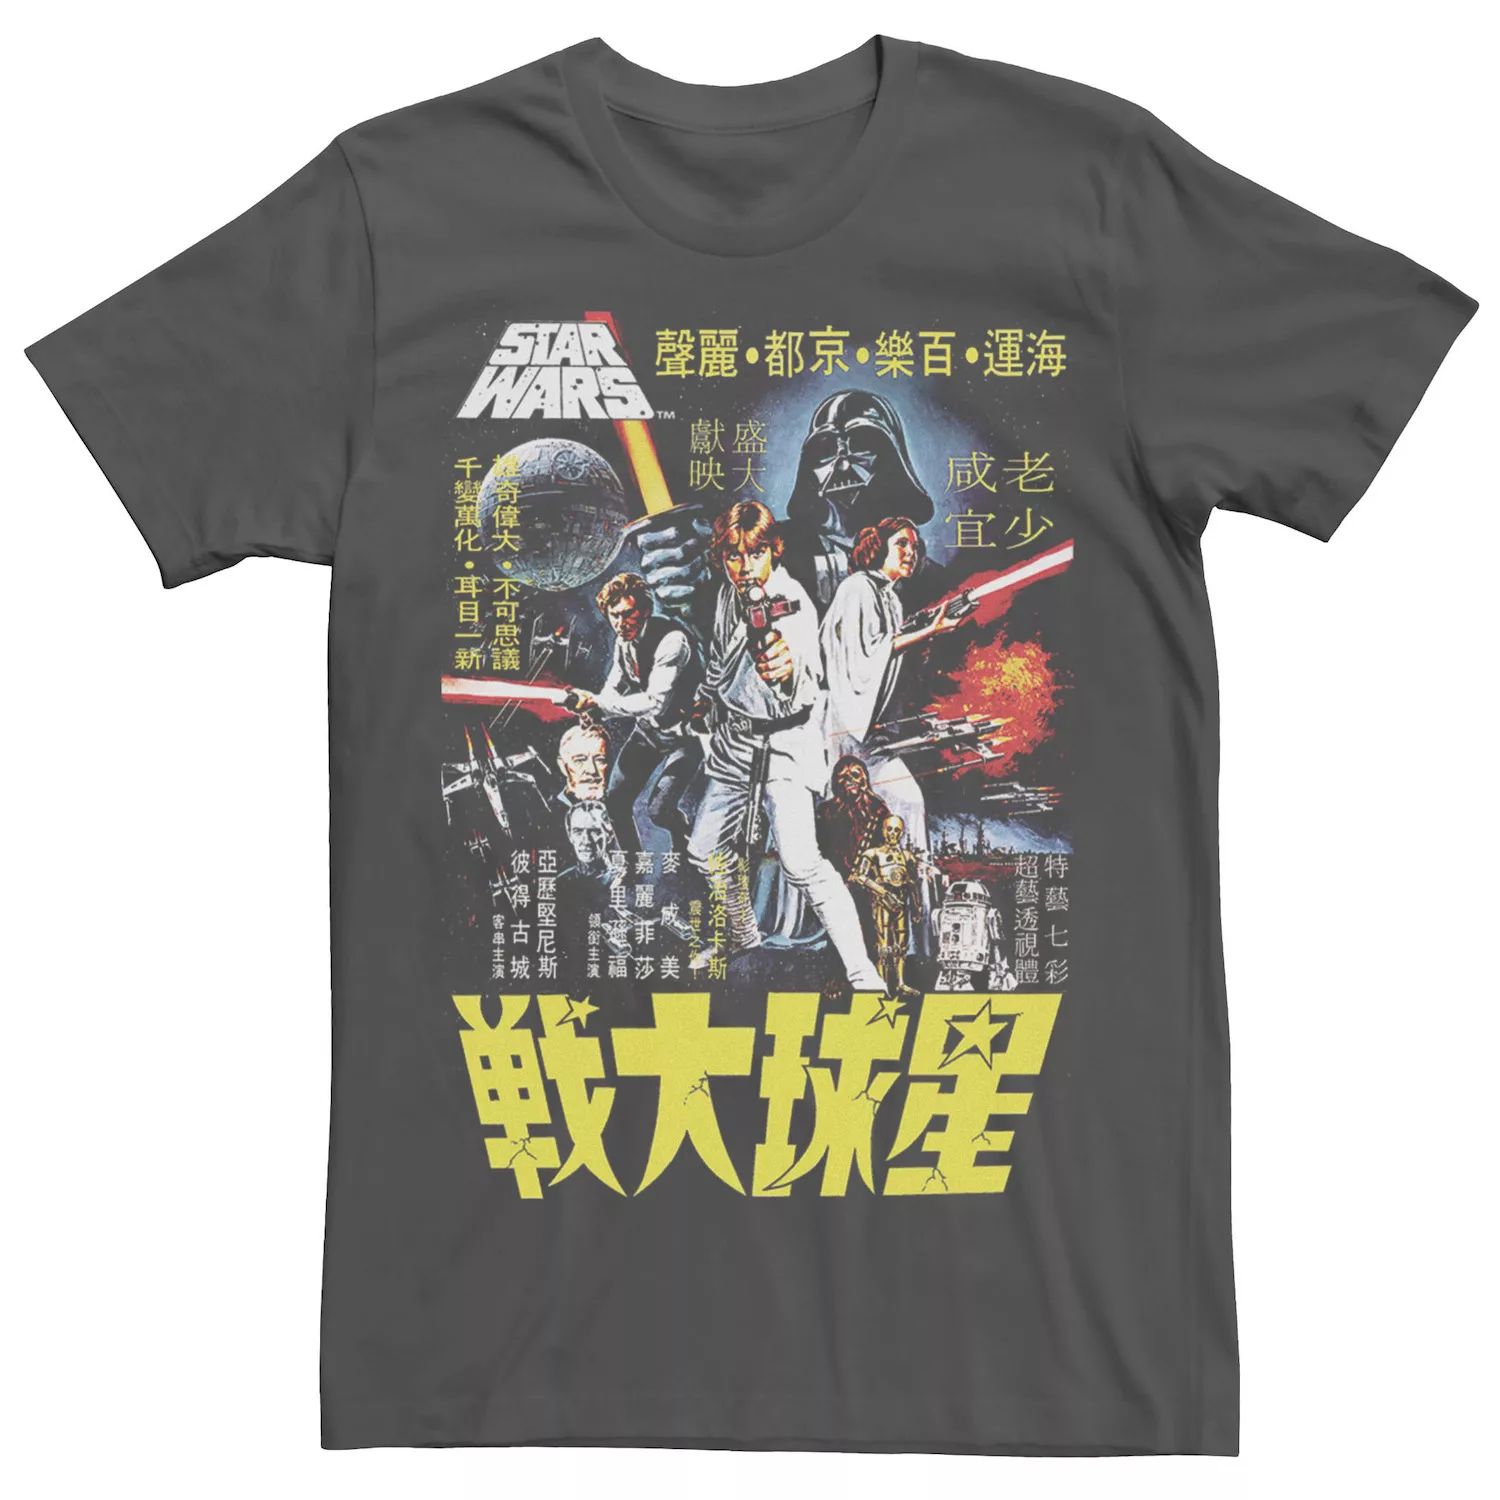 Мужская футболка с плакатом «Звездные войны» Licensed Character